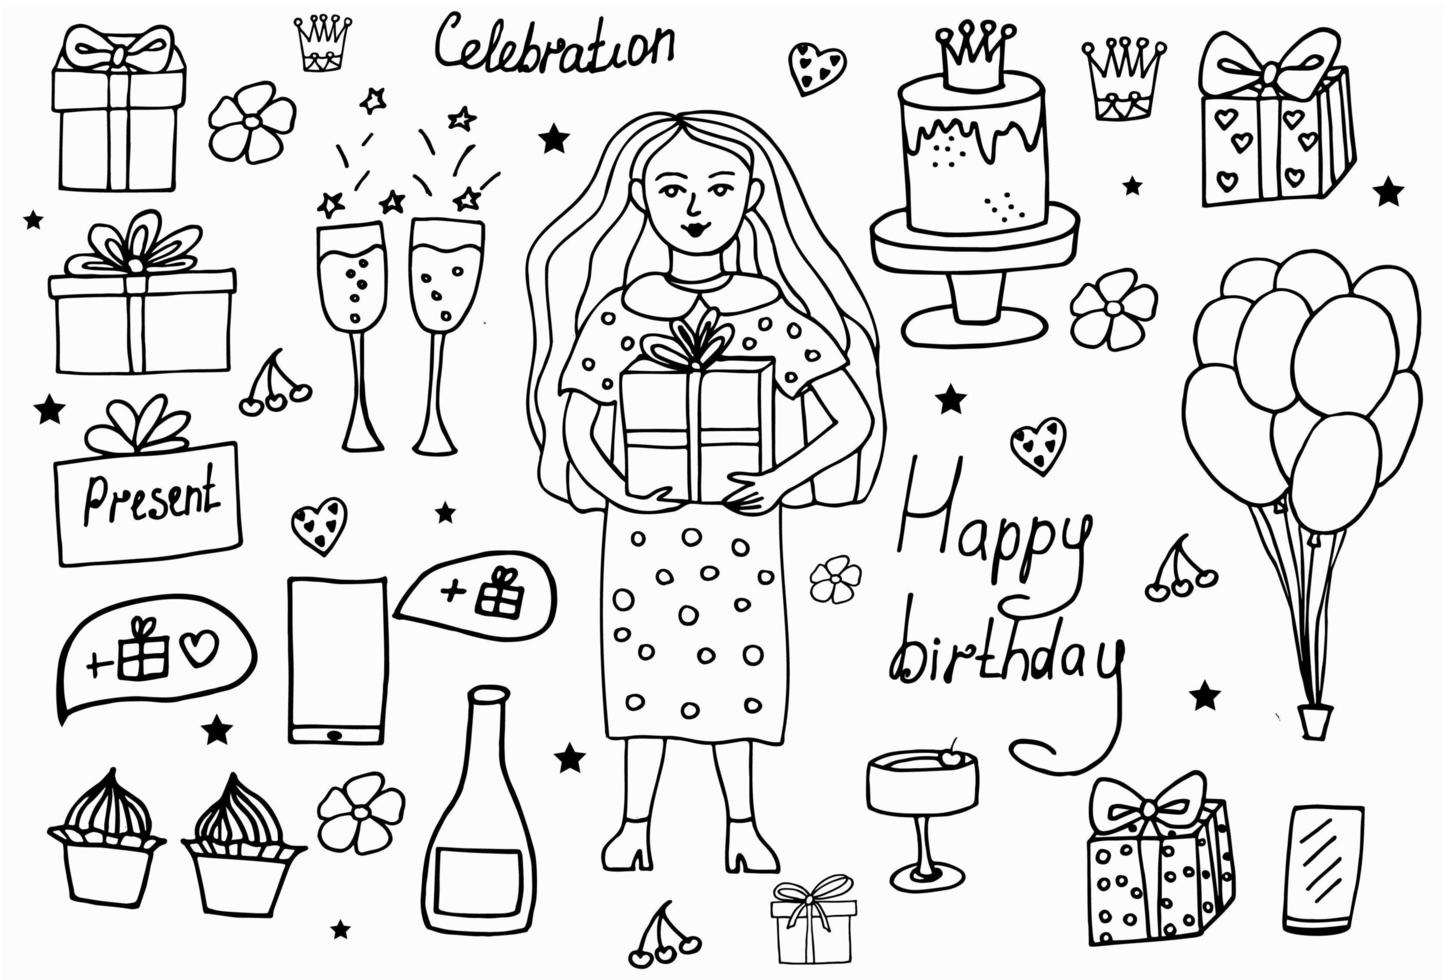 conjunto de objetos y símbolos de dibujos animados de garabatos dibujados a mano en la fiesta de cumpleaños. diseño de tarjeta de felicitación navideña e invitación de boda, feliz día de la madre, cumpleaños, día de san valentín y días festivos vector